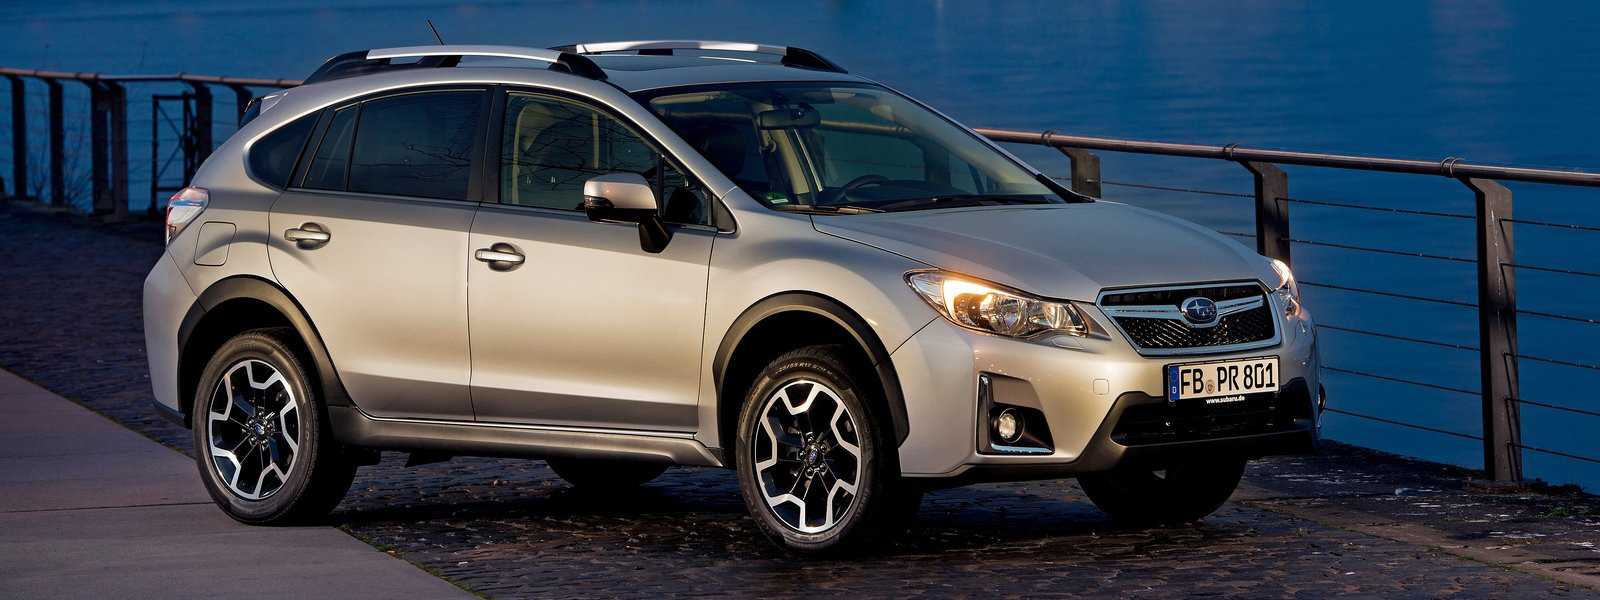 Subaru xv 2020 года — полноприводный кросс-универсал повышенной проходимости по доступной цене